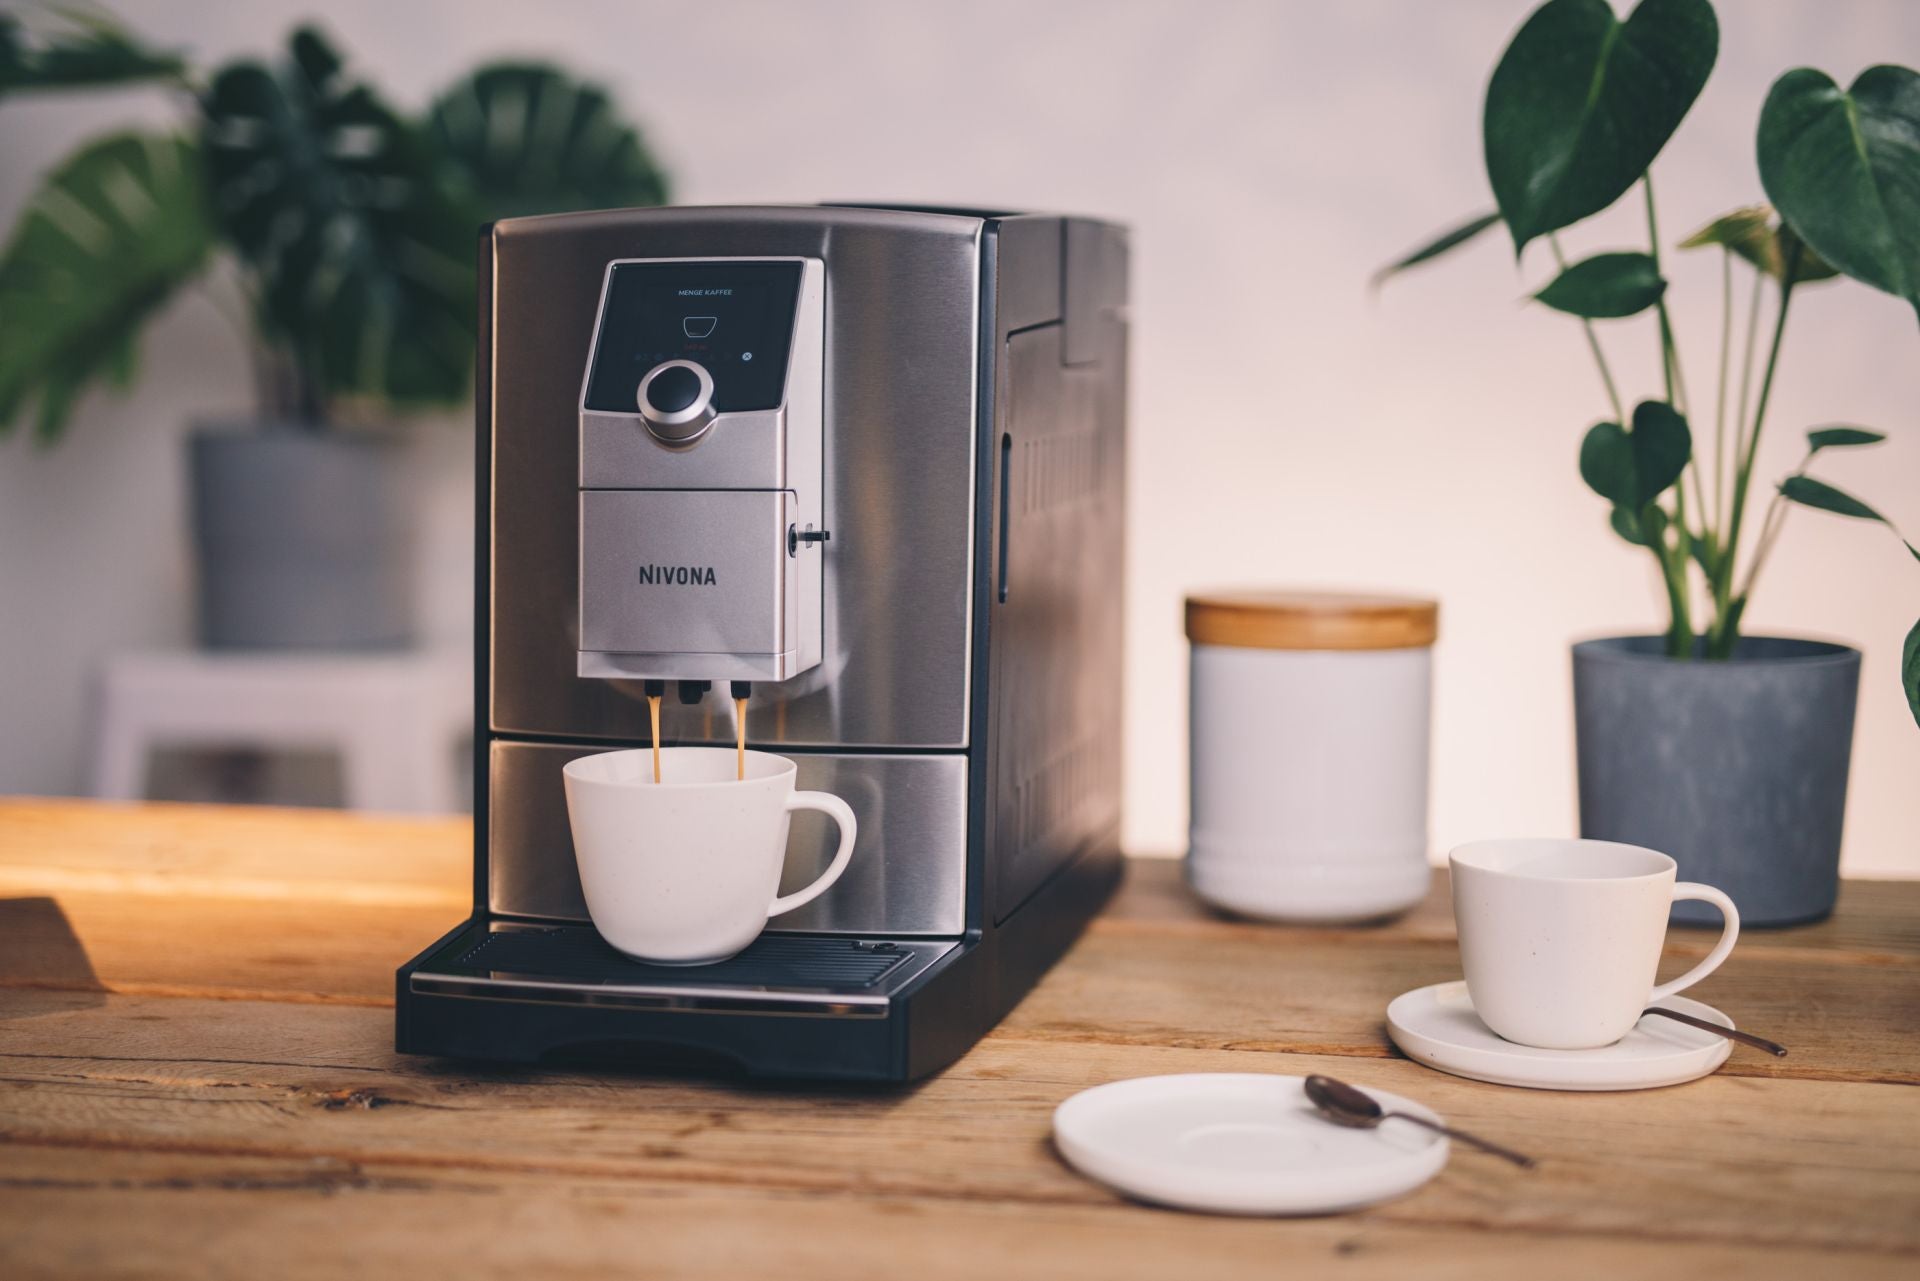 NICR 799 CafeRomatica полностью автоматическая эспрессо кофемашина